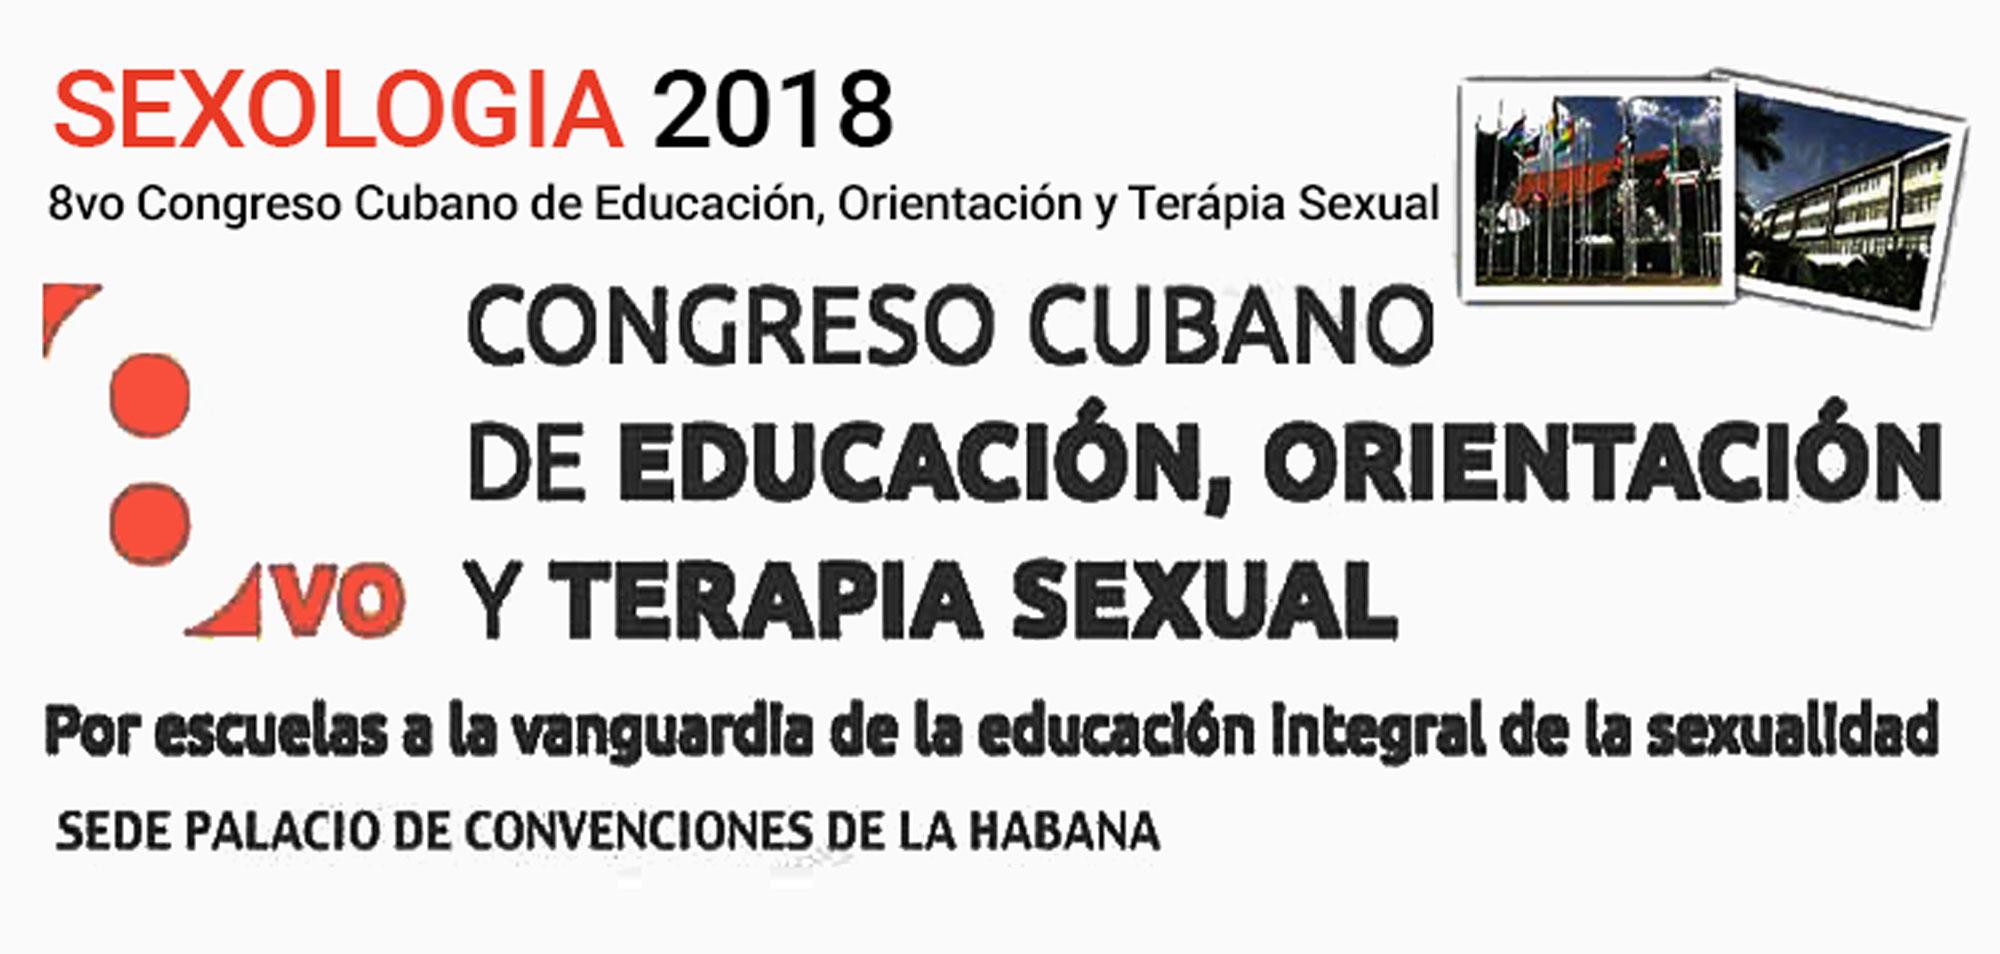 Diversos foros fomentan en Cuba educación integral sobre sexualidad